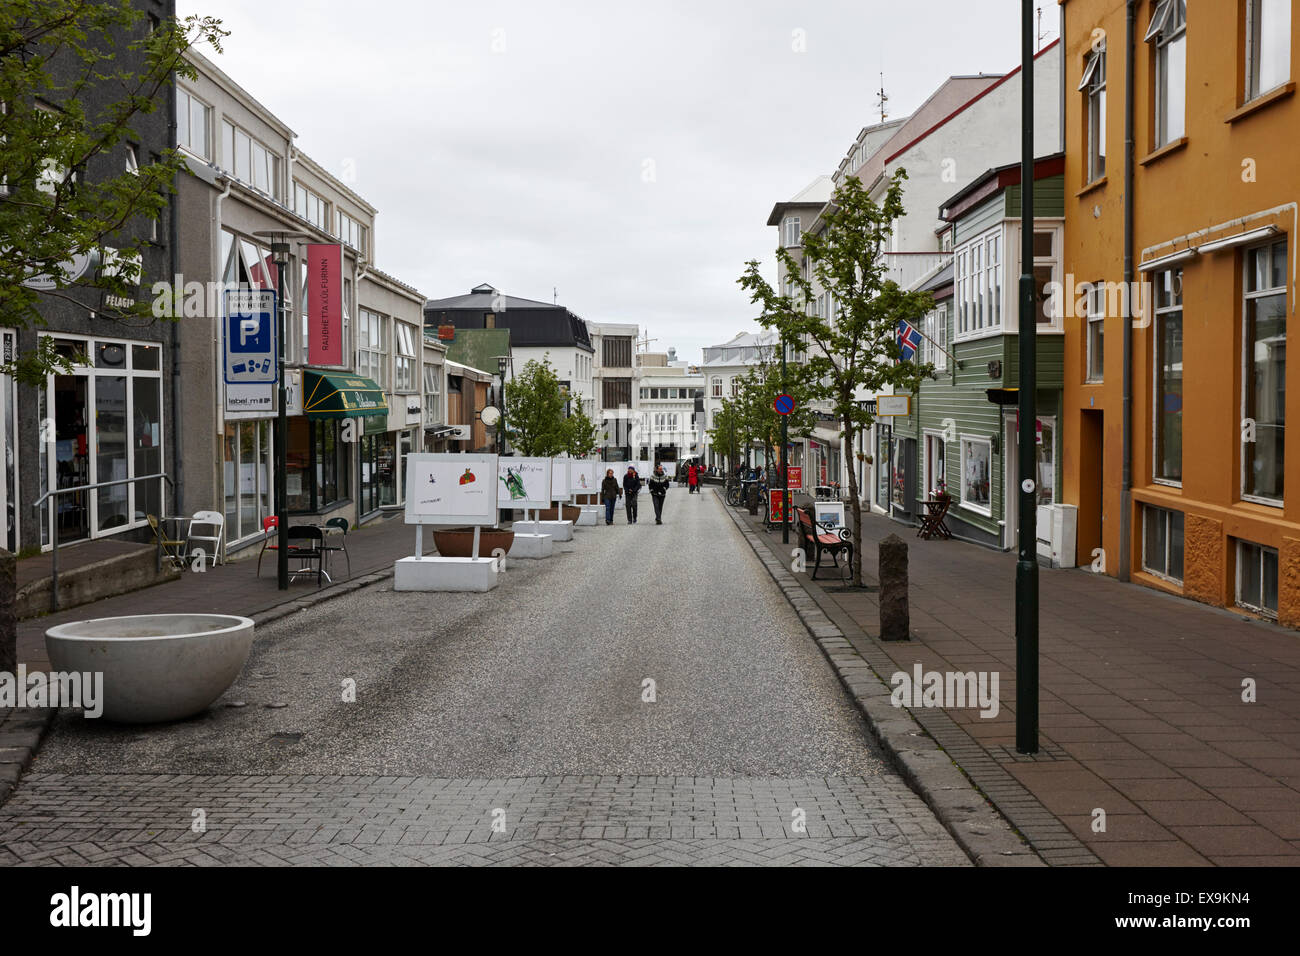 Skólavörðustíg skolavordustig shopping street reykjavik iceland Stock Photo